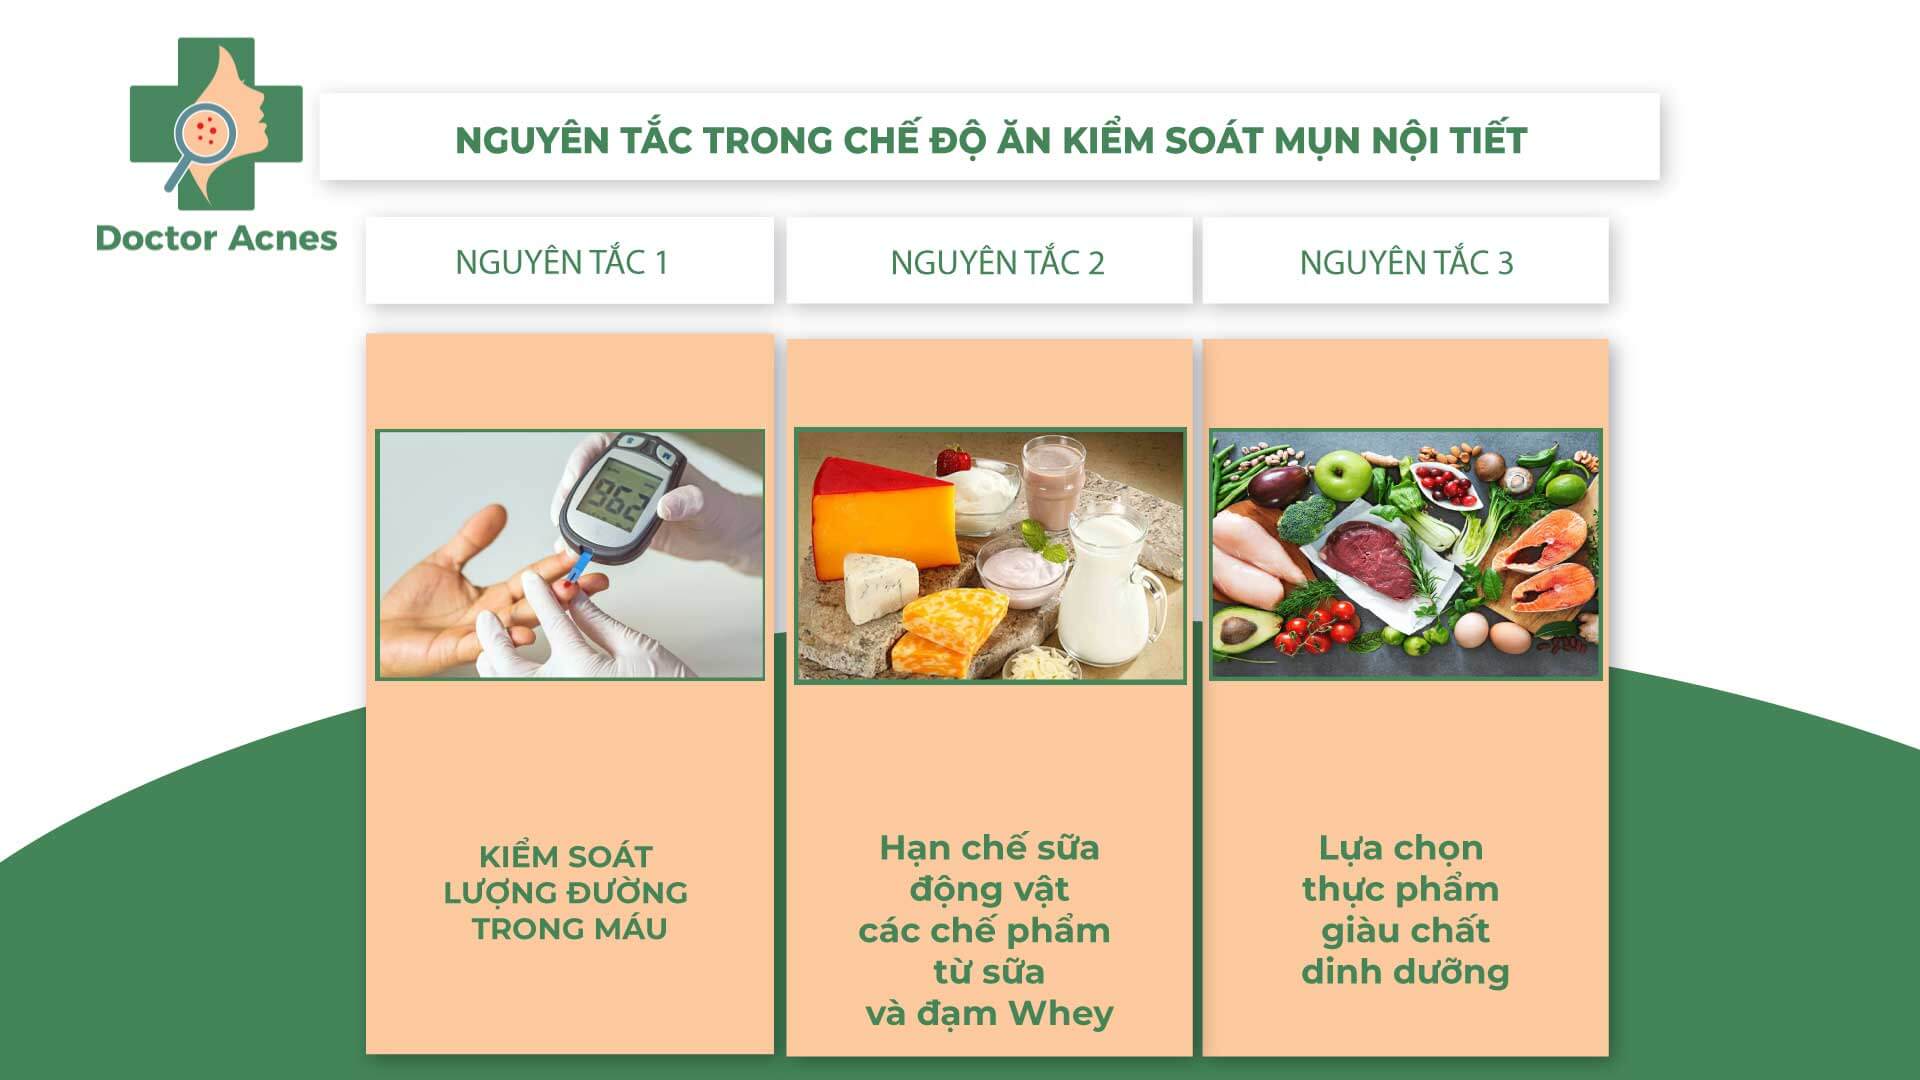 Nguyên tắc kiểm soát mụn trong chế độ ăn - Doctor Acnes